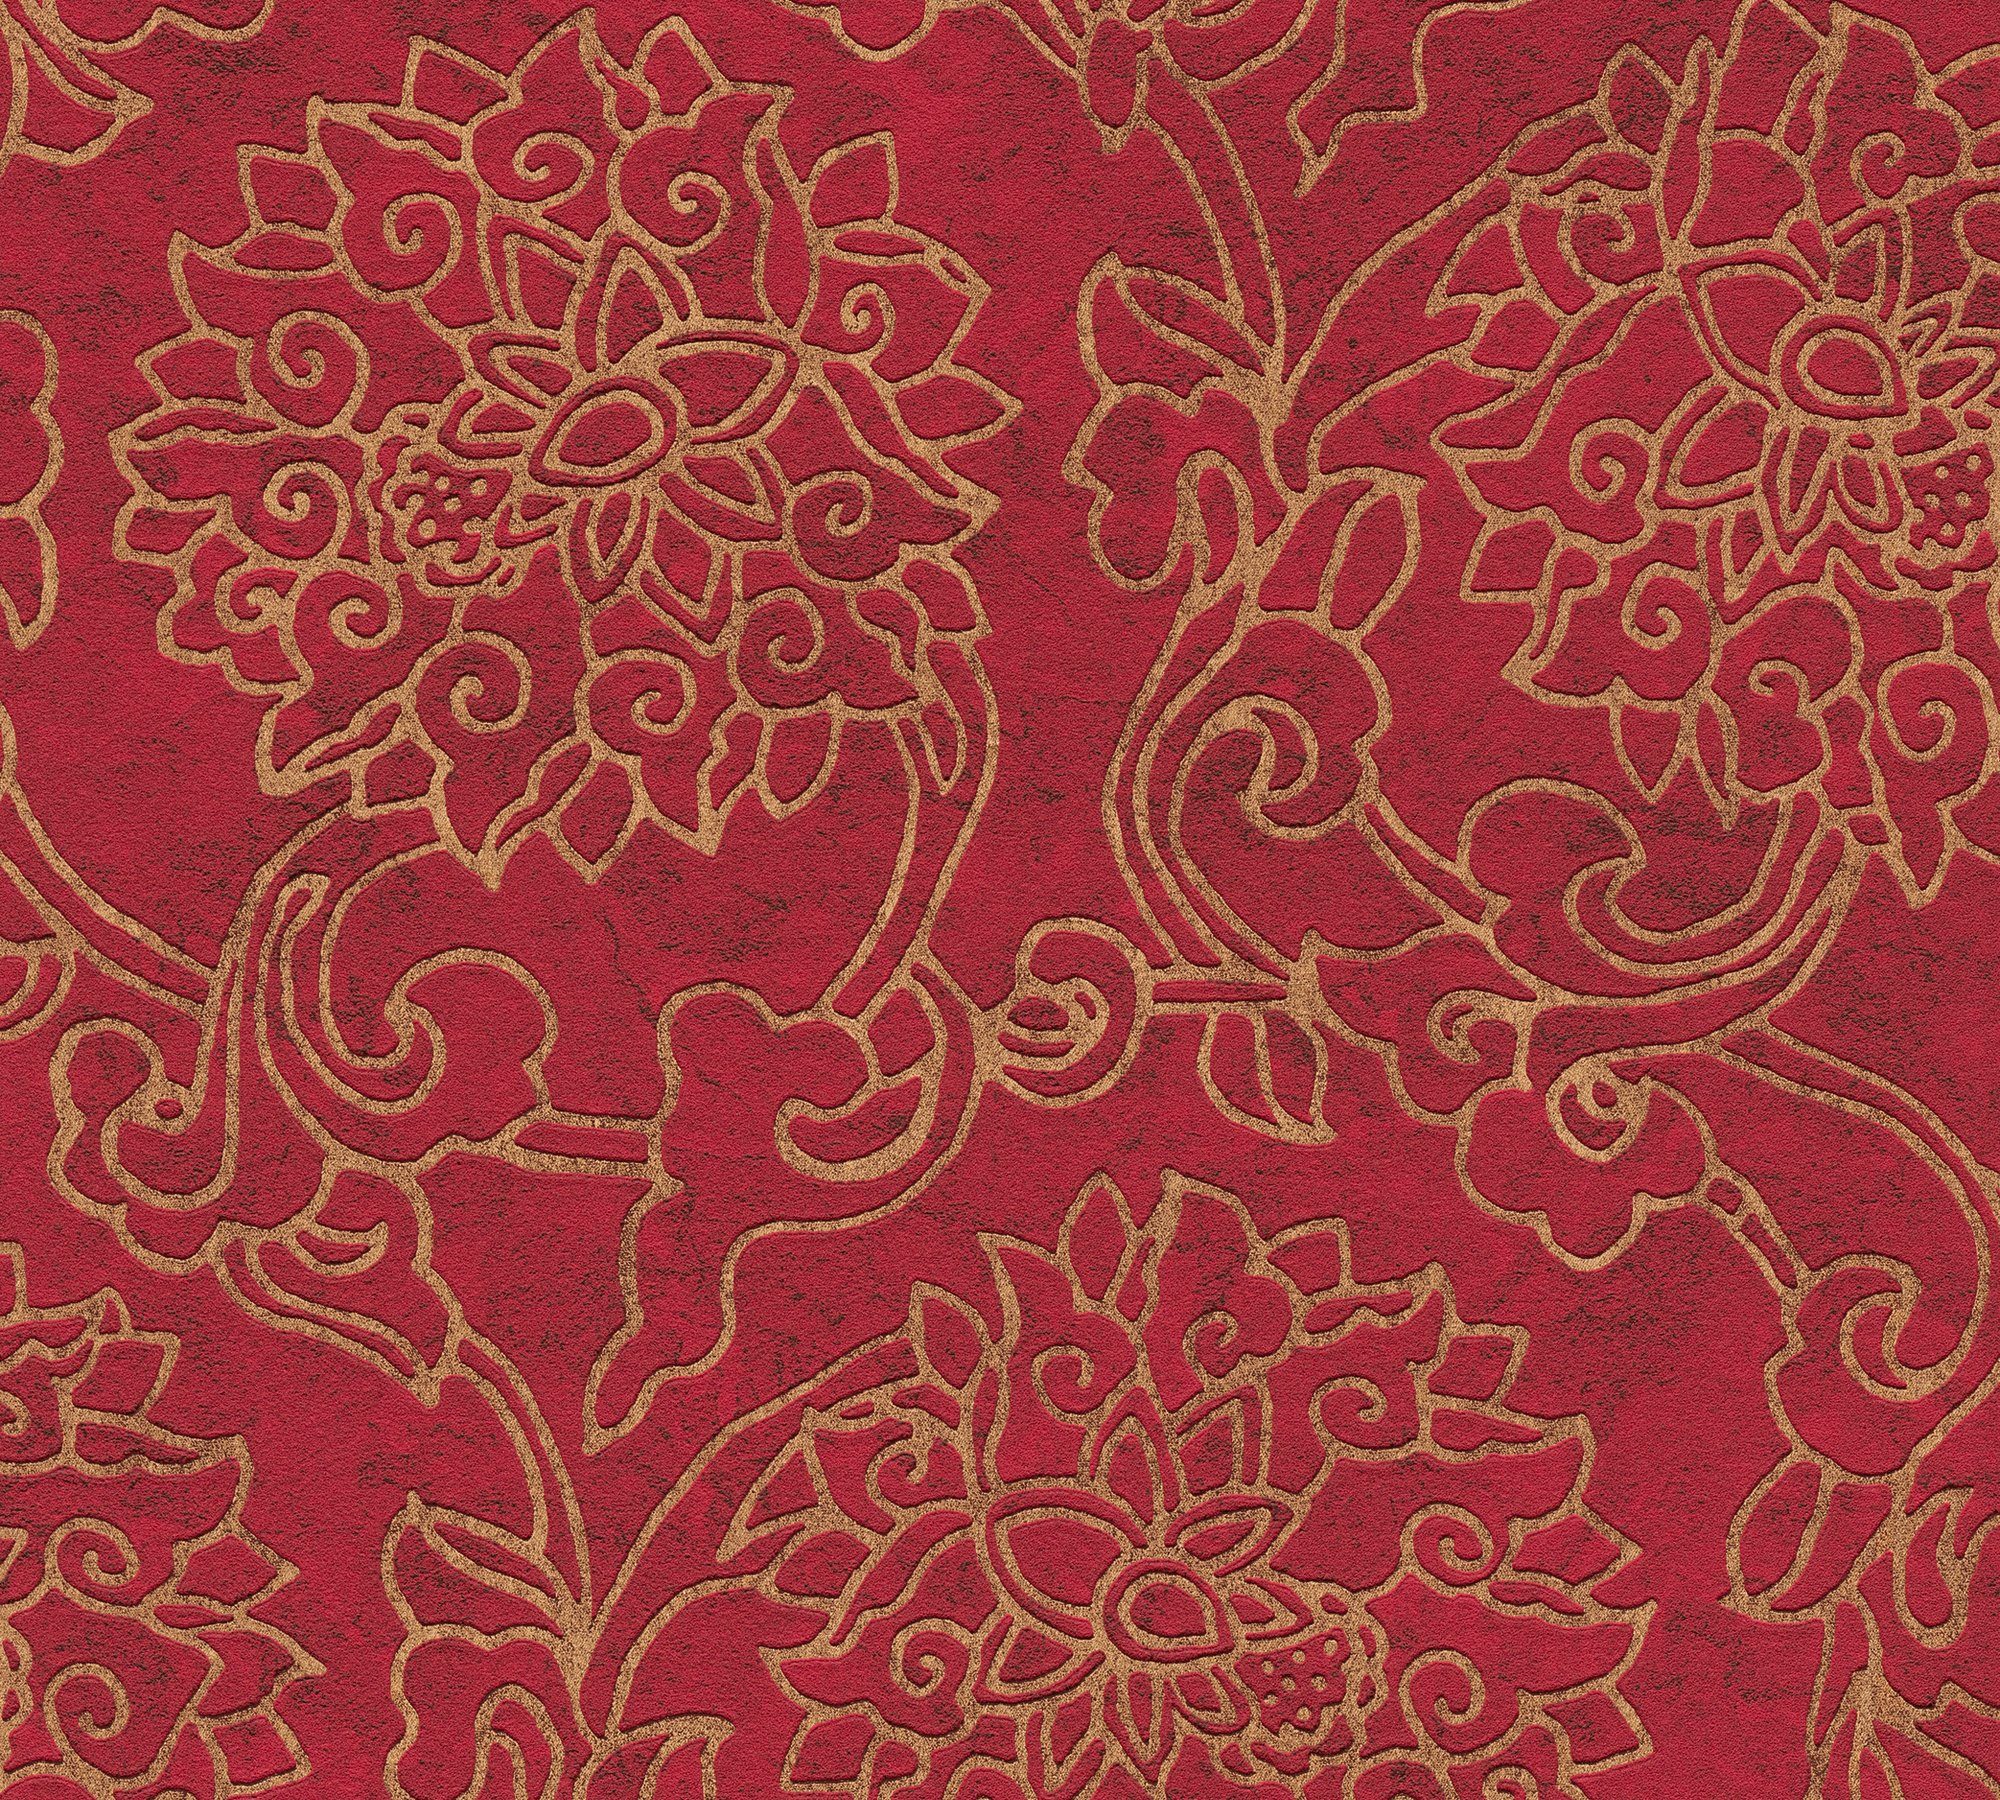 aufgeschäumt, Ornament Vliestapete Japanisch Création Tapete blutrot/gold Asian gemustert, A.S. Fusion, ornamental,